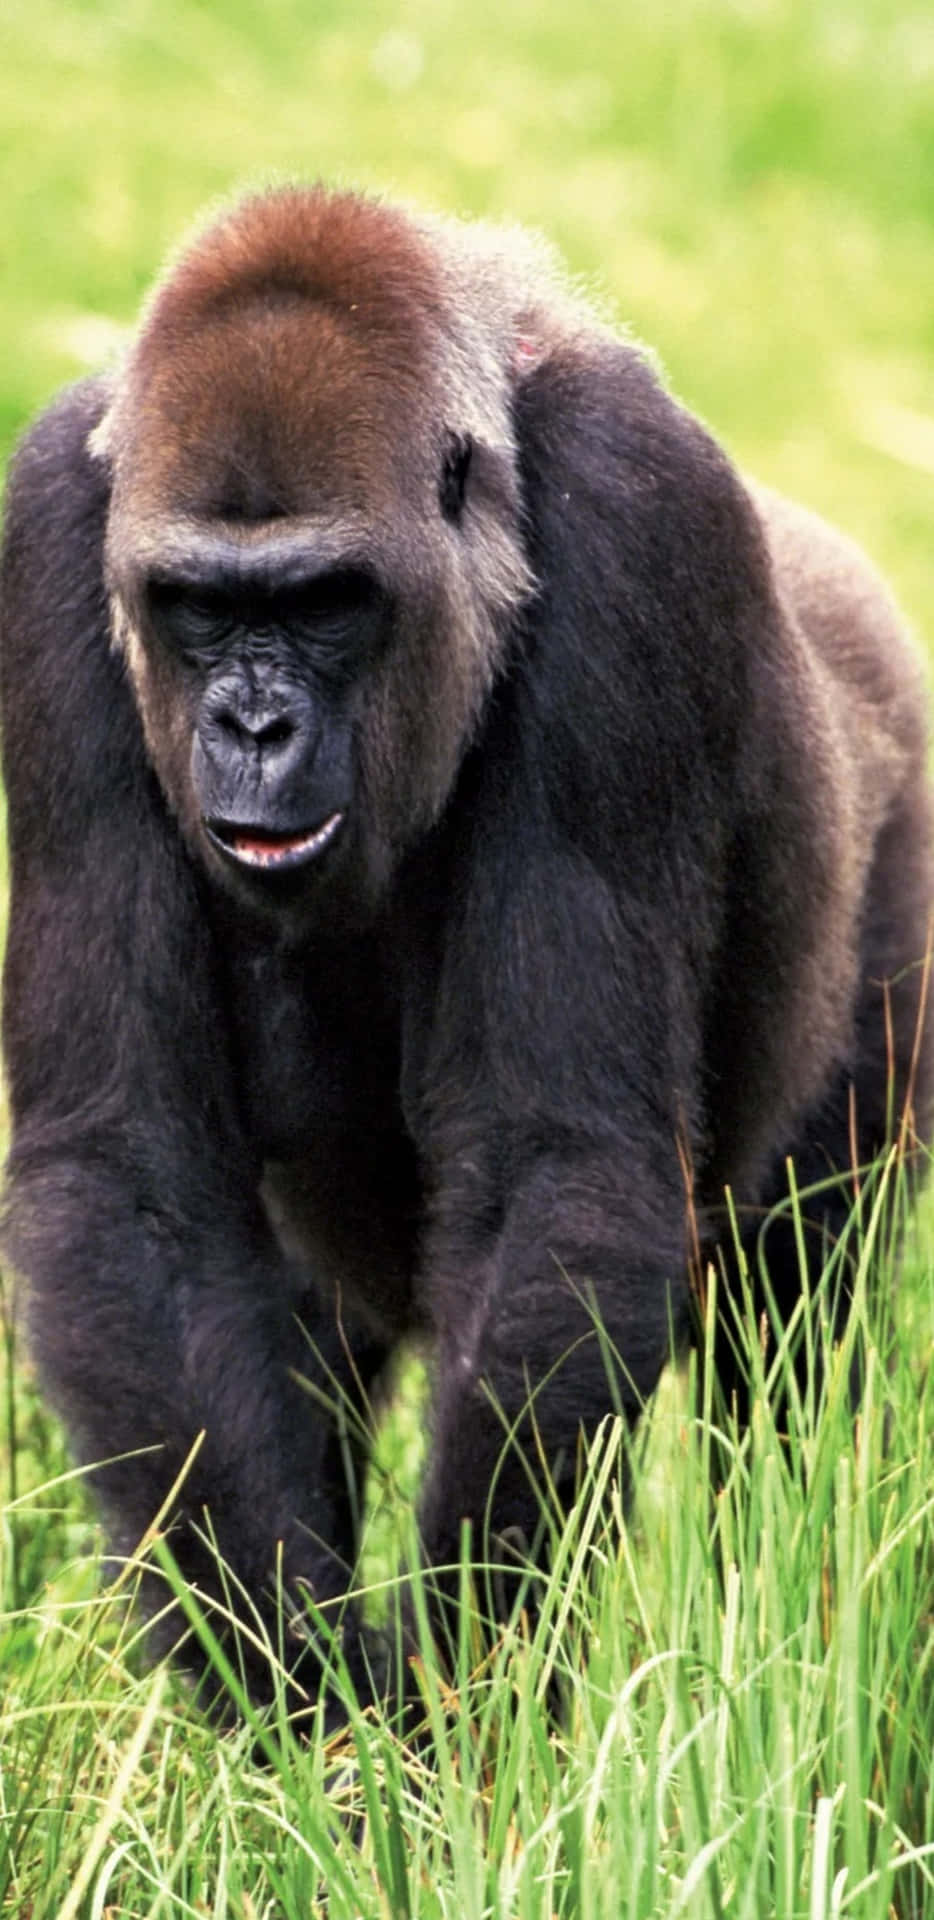 Großeswildes Tier Pixel 3 Xl Hintergrundbild Mit Gorilla